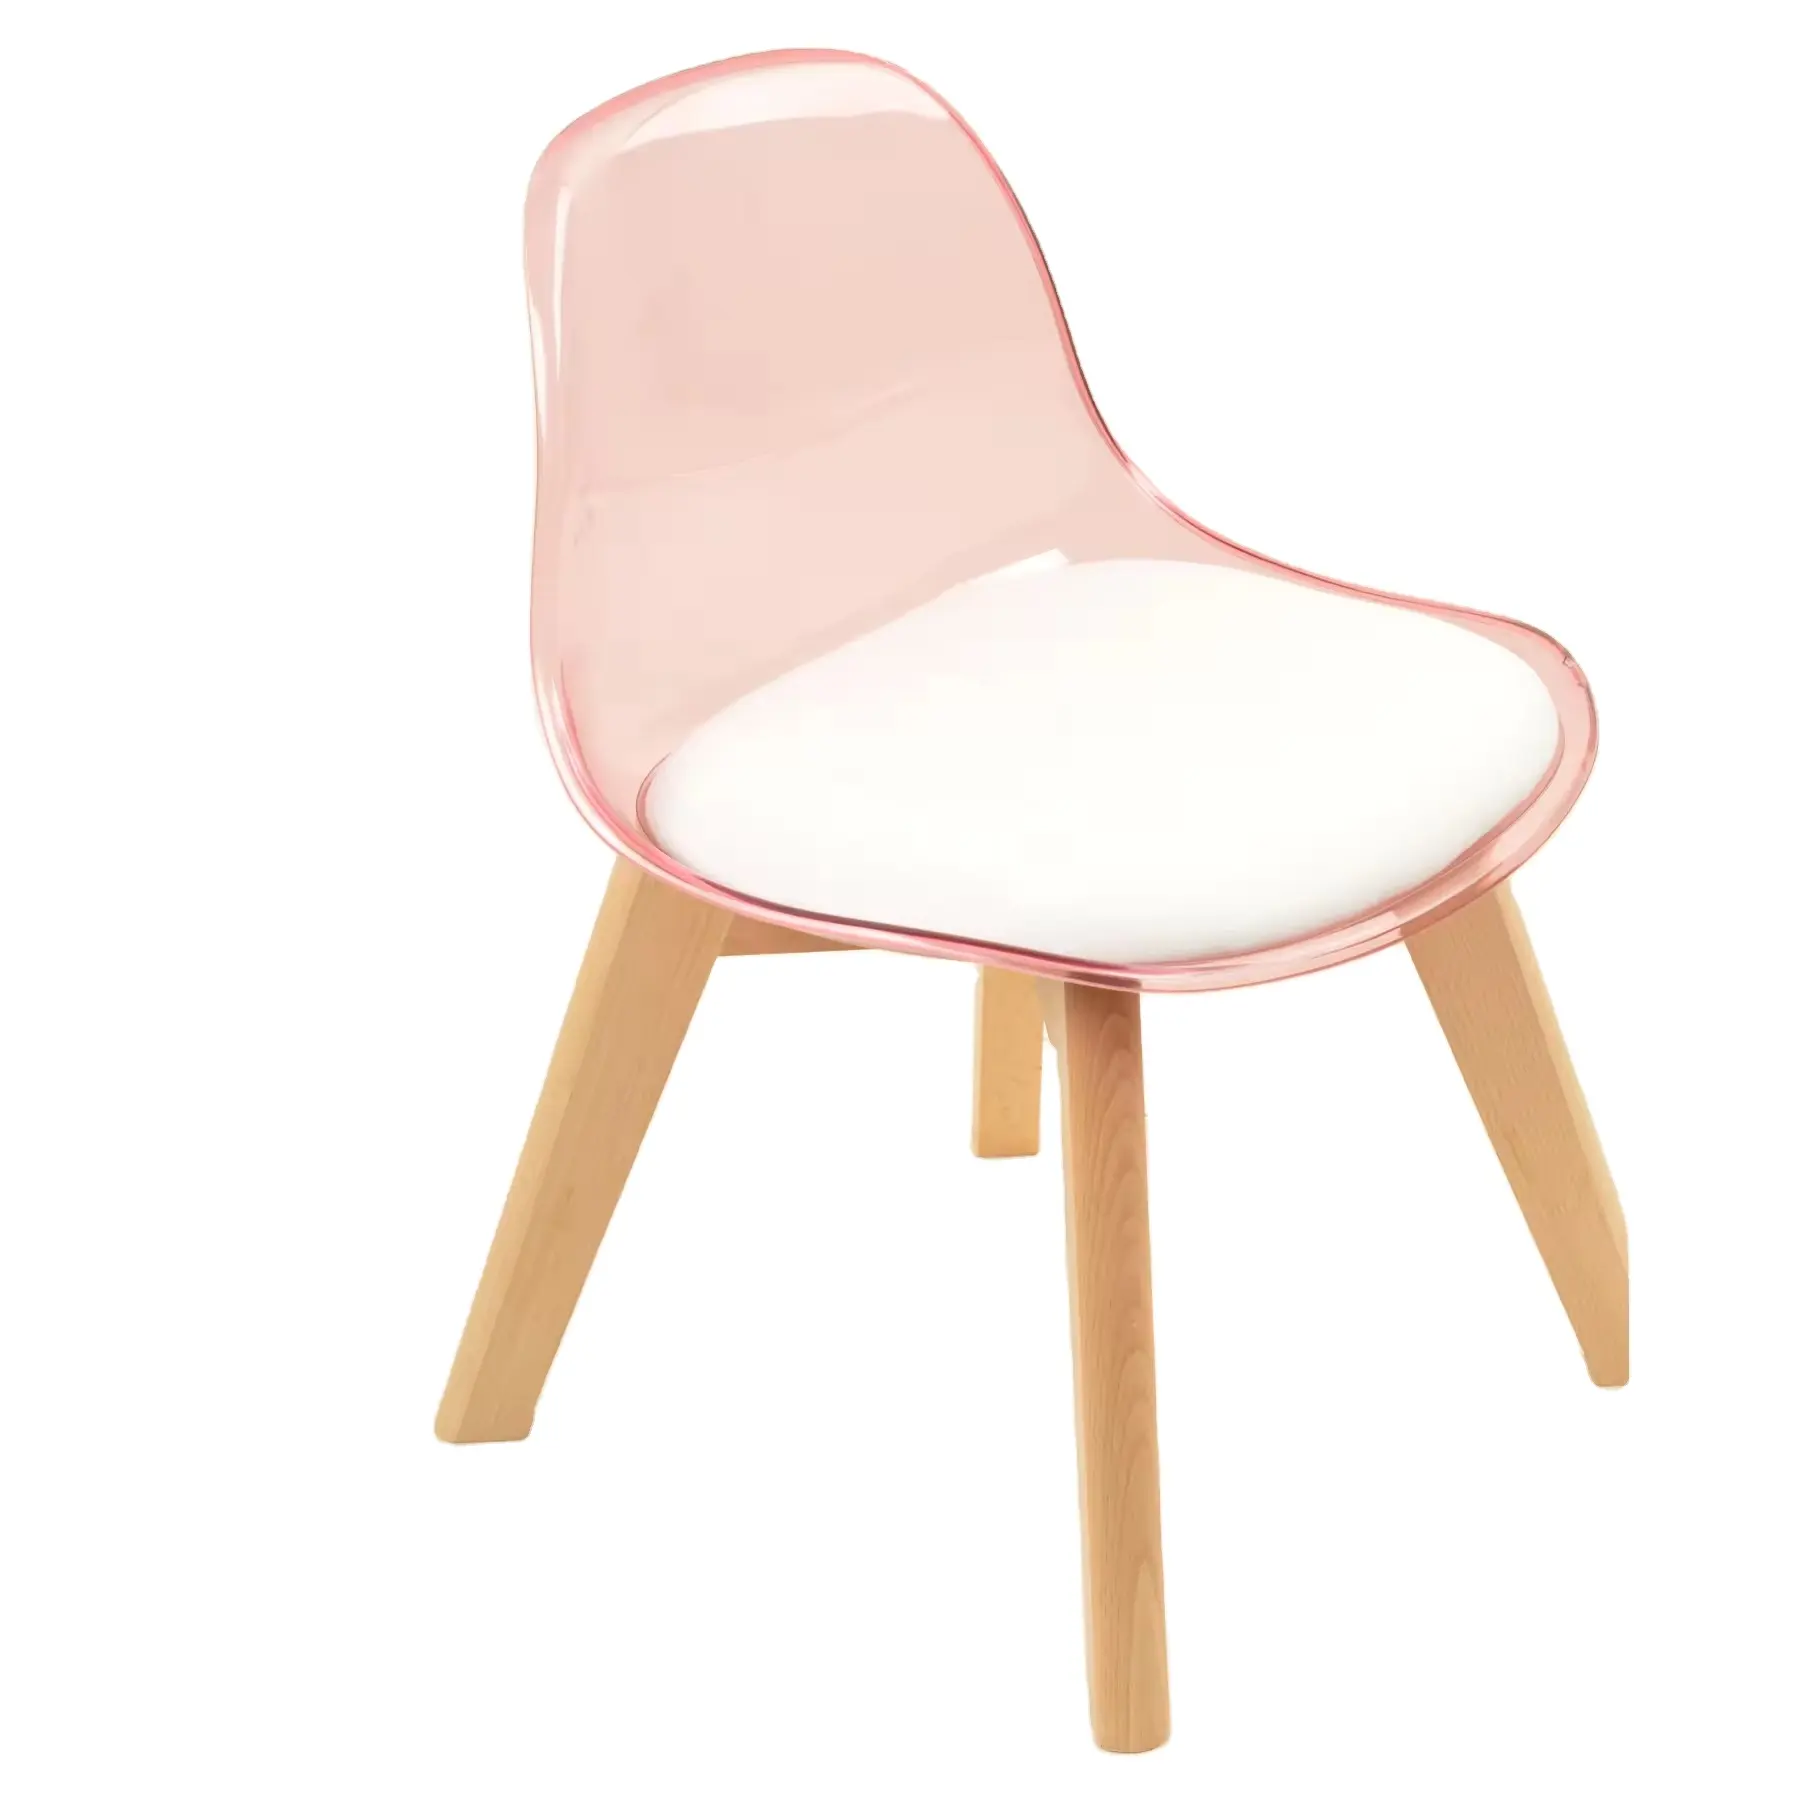 Cadeiras empilháveis de plástico modernas, cadeiras de sala de jantar em cores rosa, móveis para café, cadeiras de plástico para crianças ao ar livre